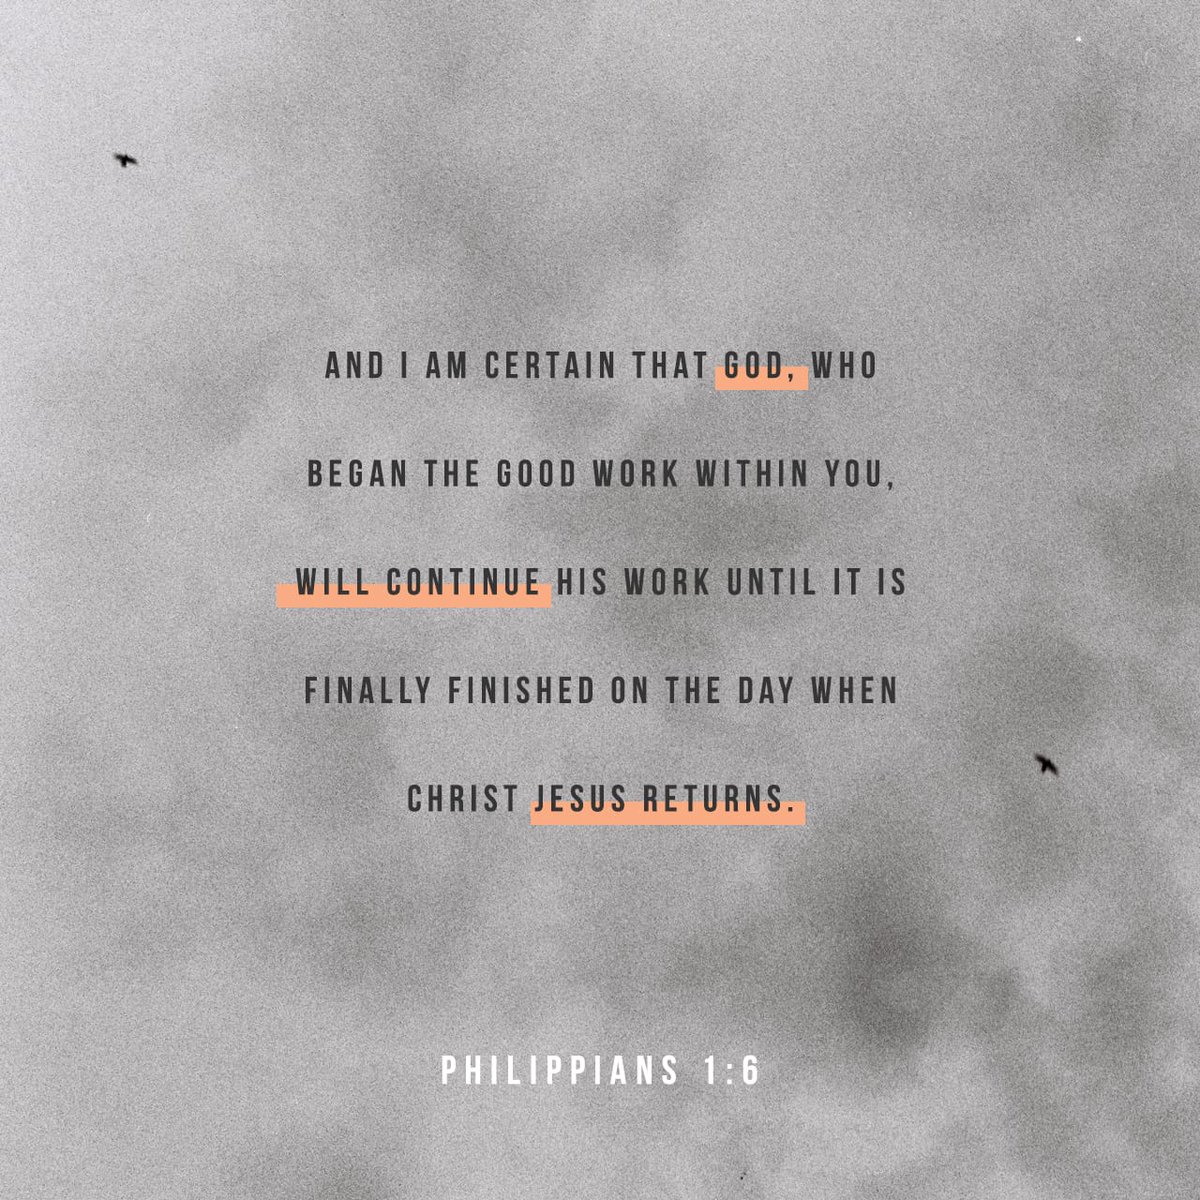 Philippians 1:6